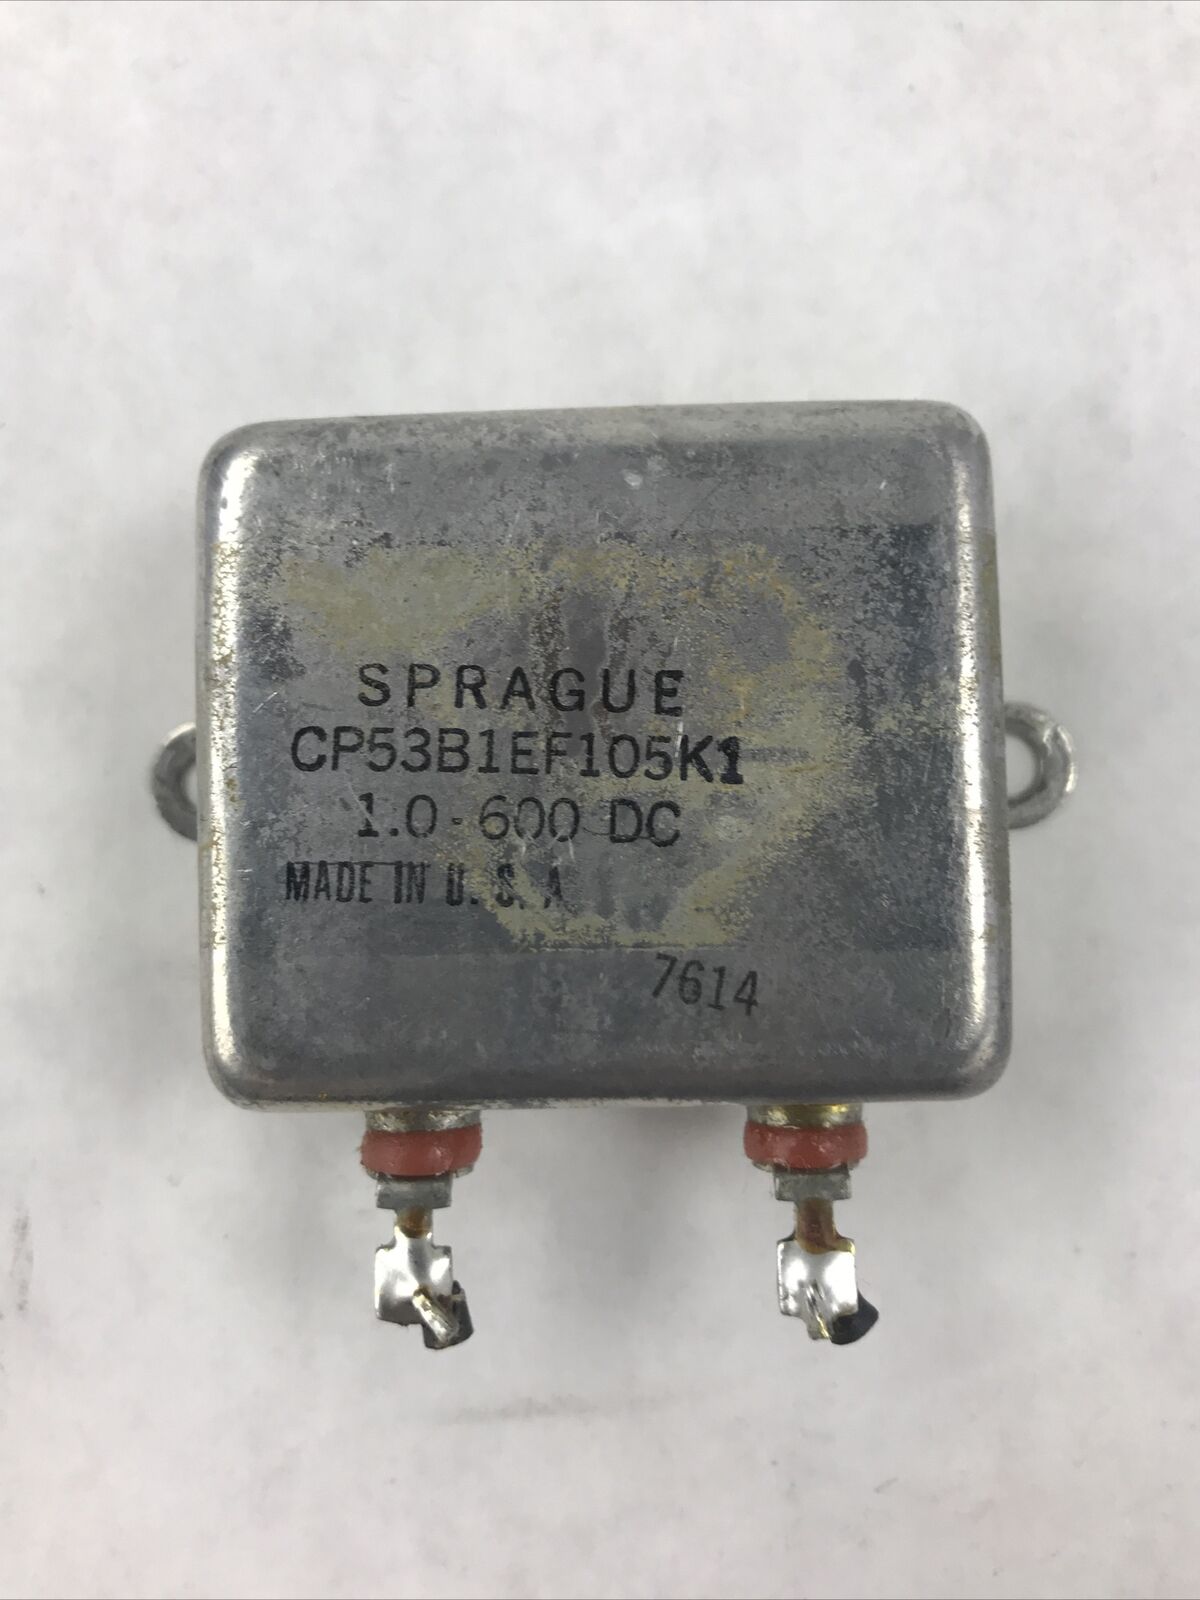 Sprague CP53B1EF105K1 2X1.0-600 DC Capacitor/Relay Unit